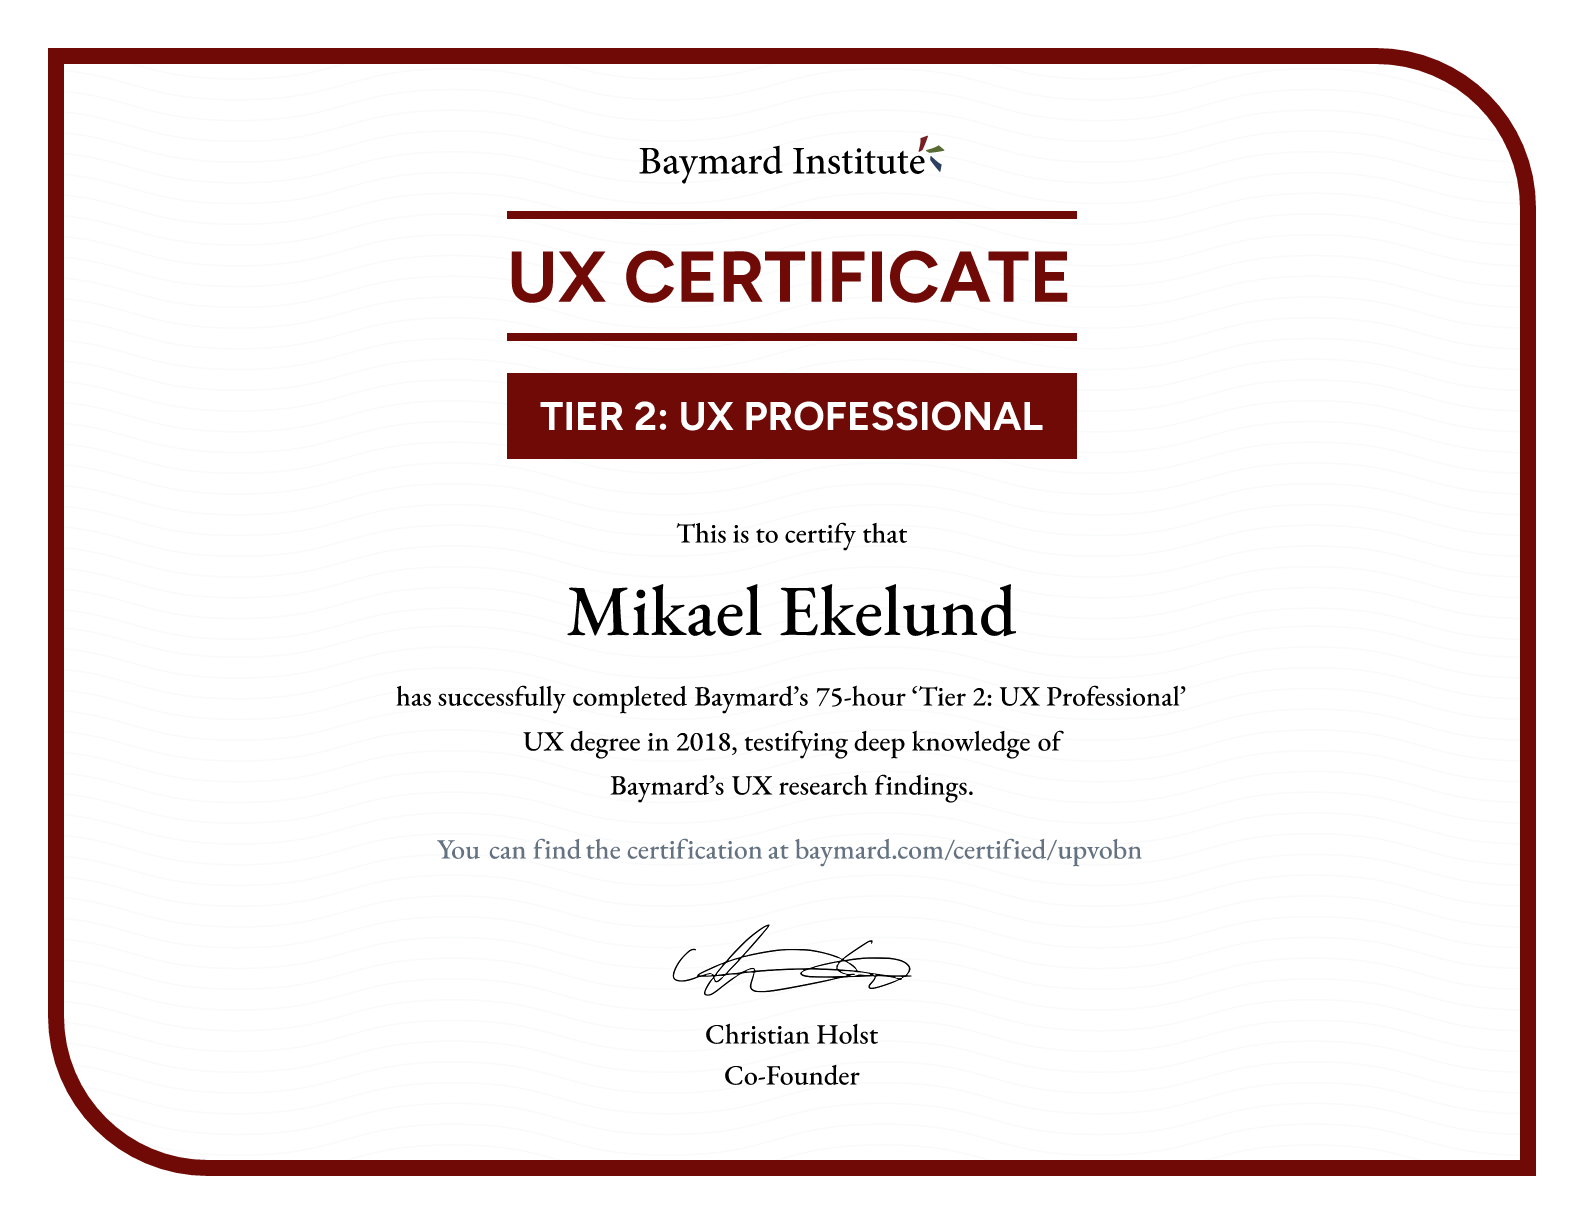 Mikael Ekelund’s certificate